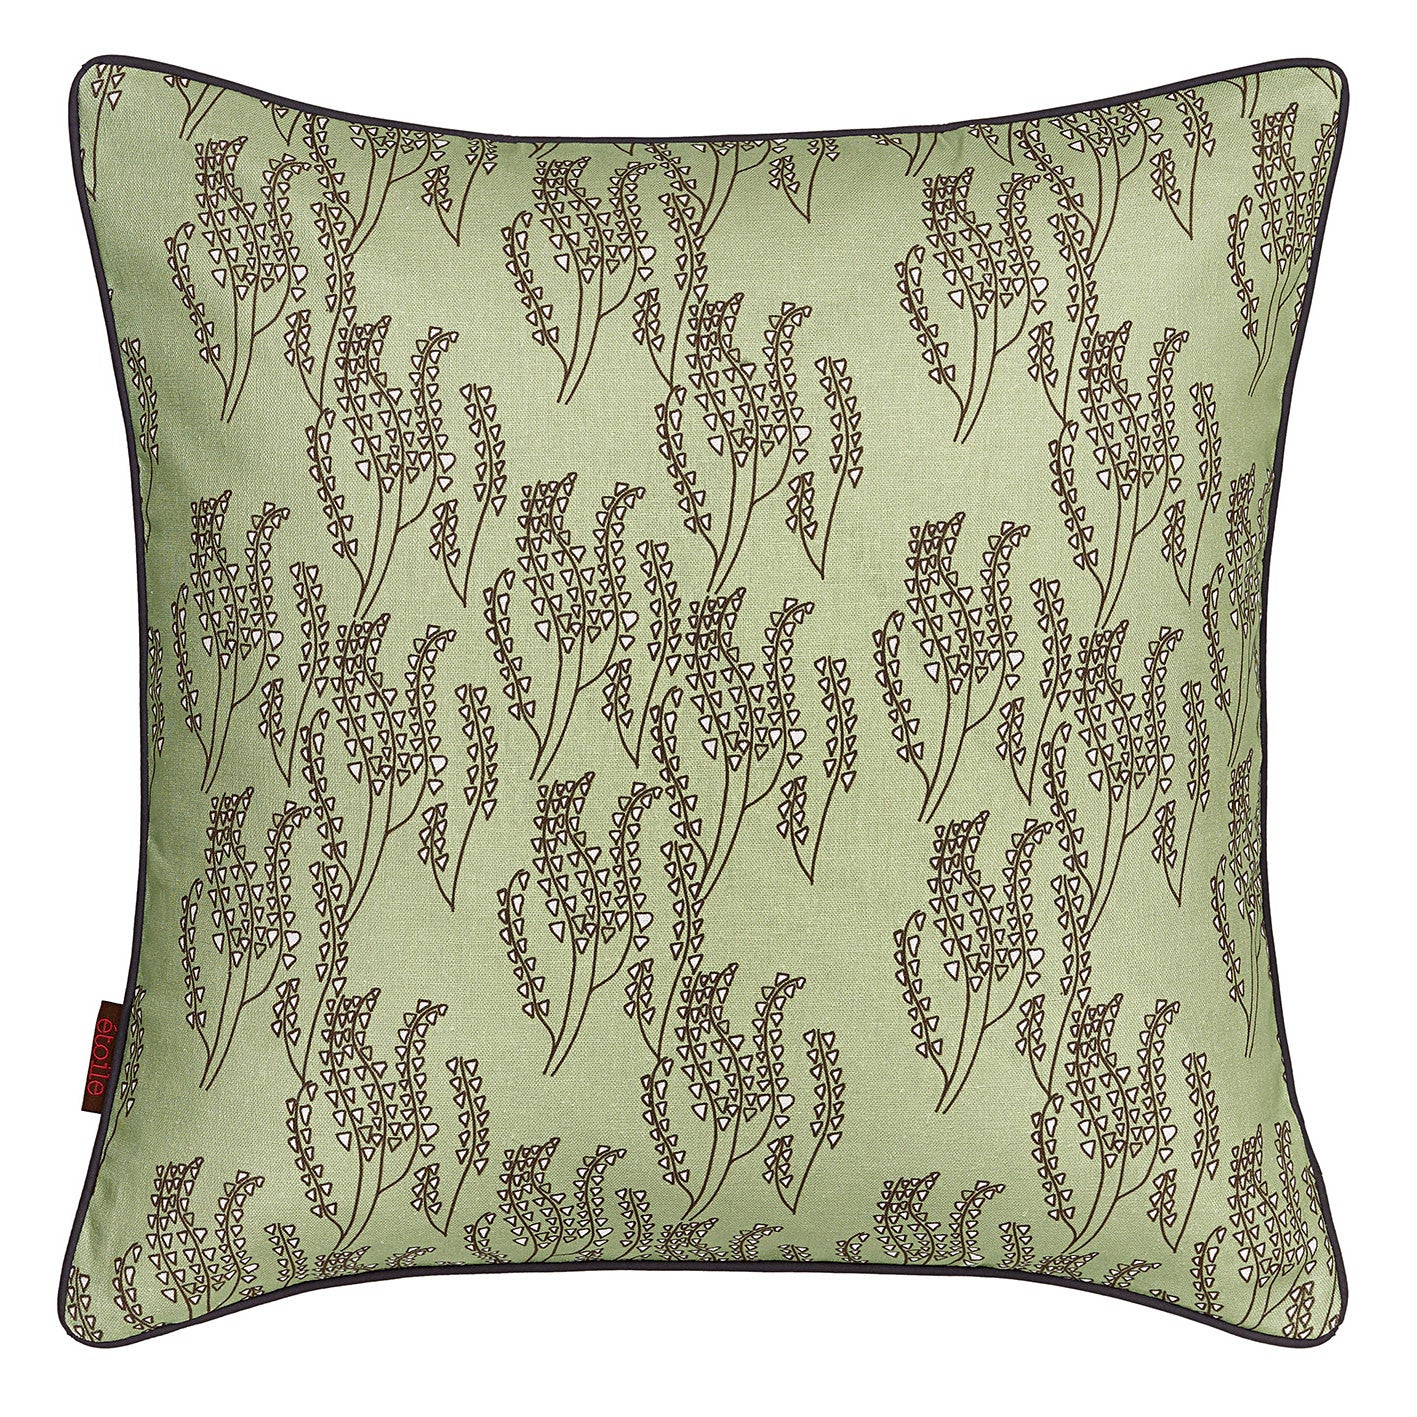 Maricopa Grass Pattern Linen Cotton Decorative Throw Pillow in Light Eau de Nil Green 45x45cm (18x18")